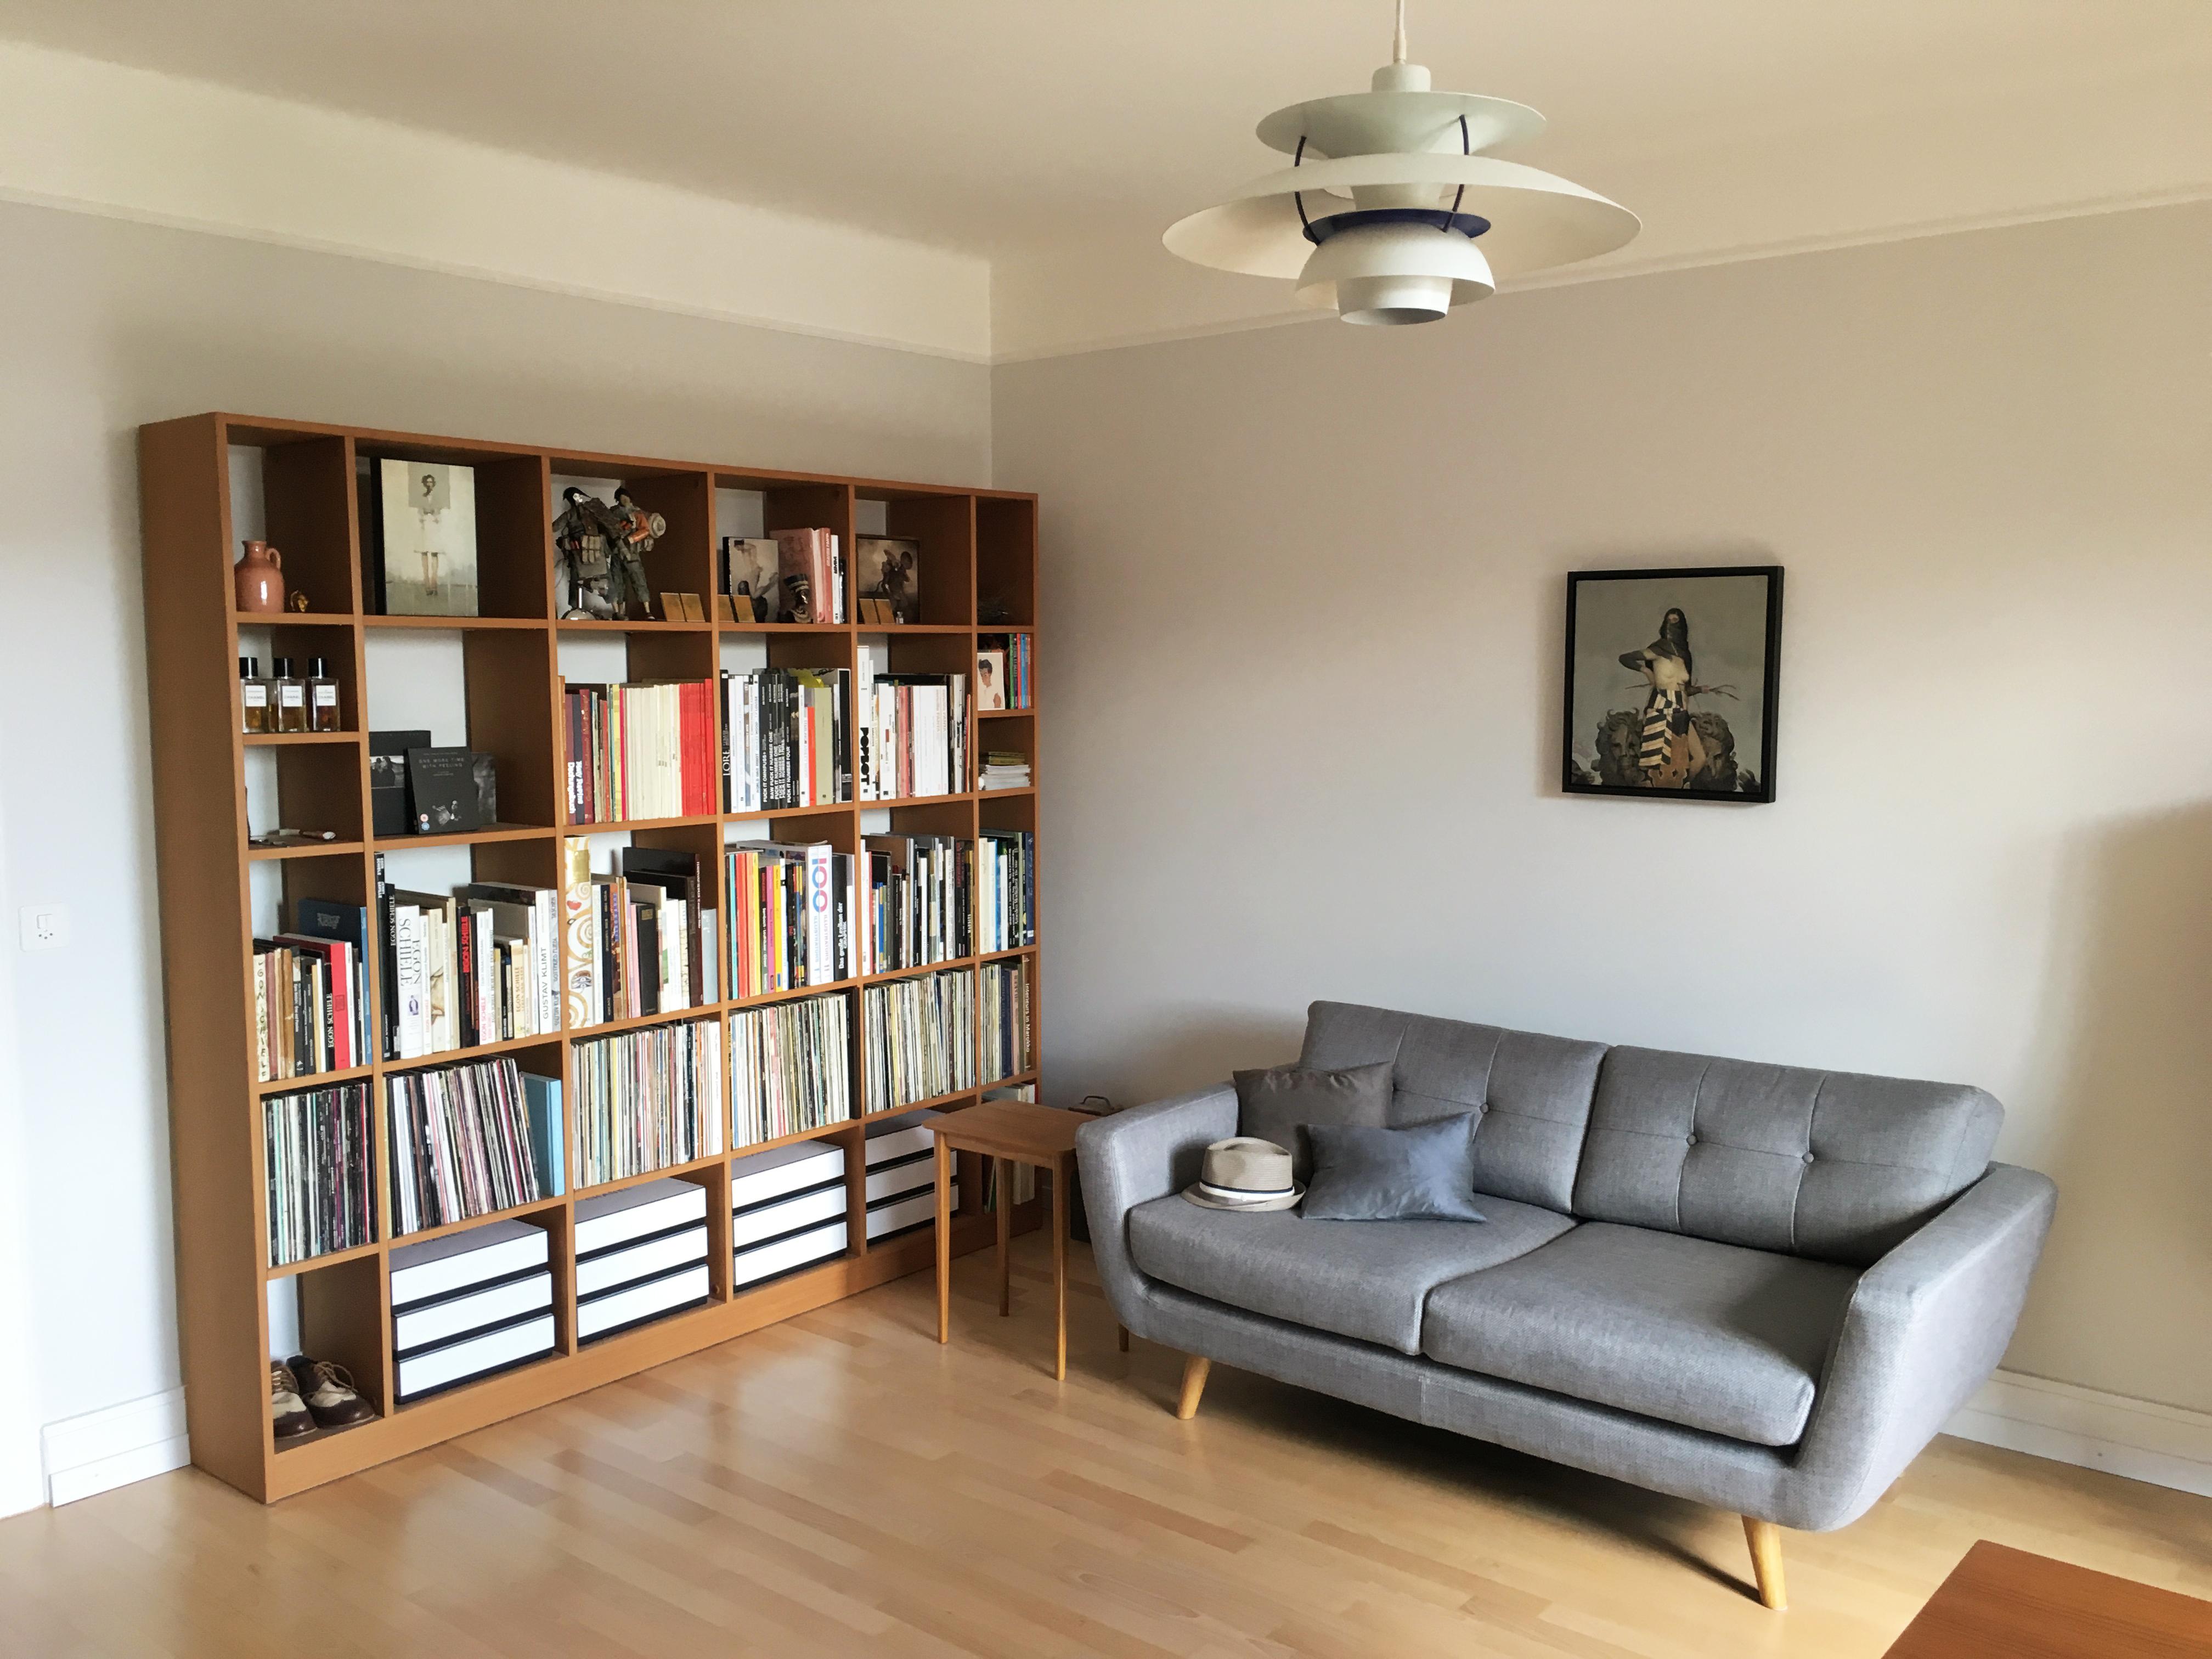 Modernes Bücherregal im Wohnzimmer #regal #bücherregal ©Pickawood GmbH